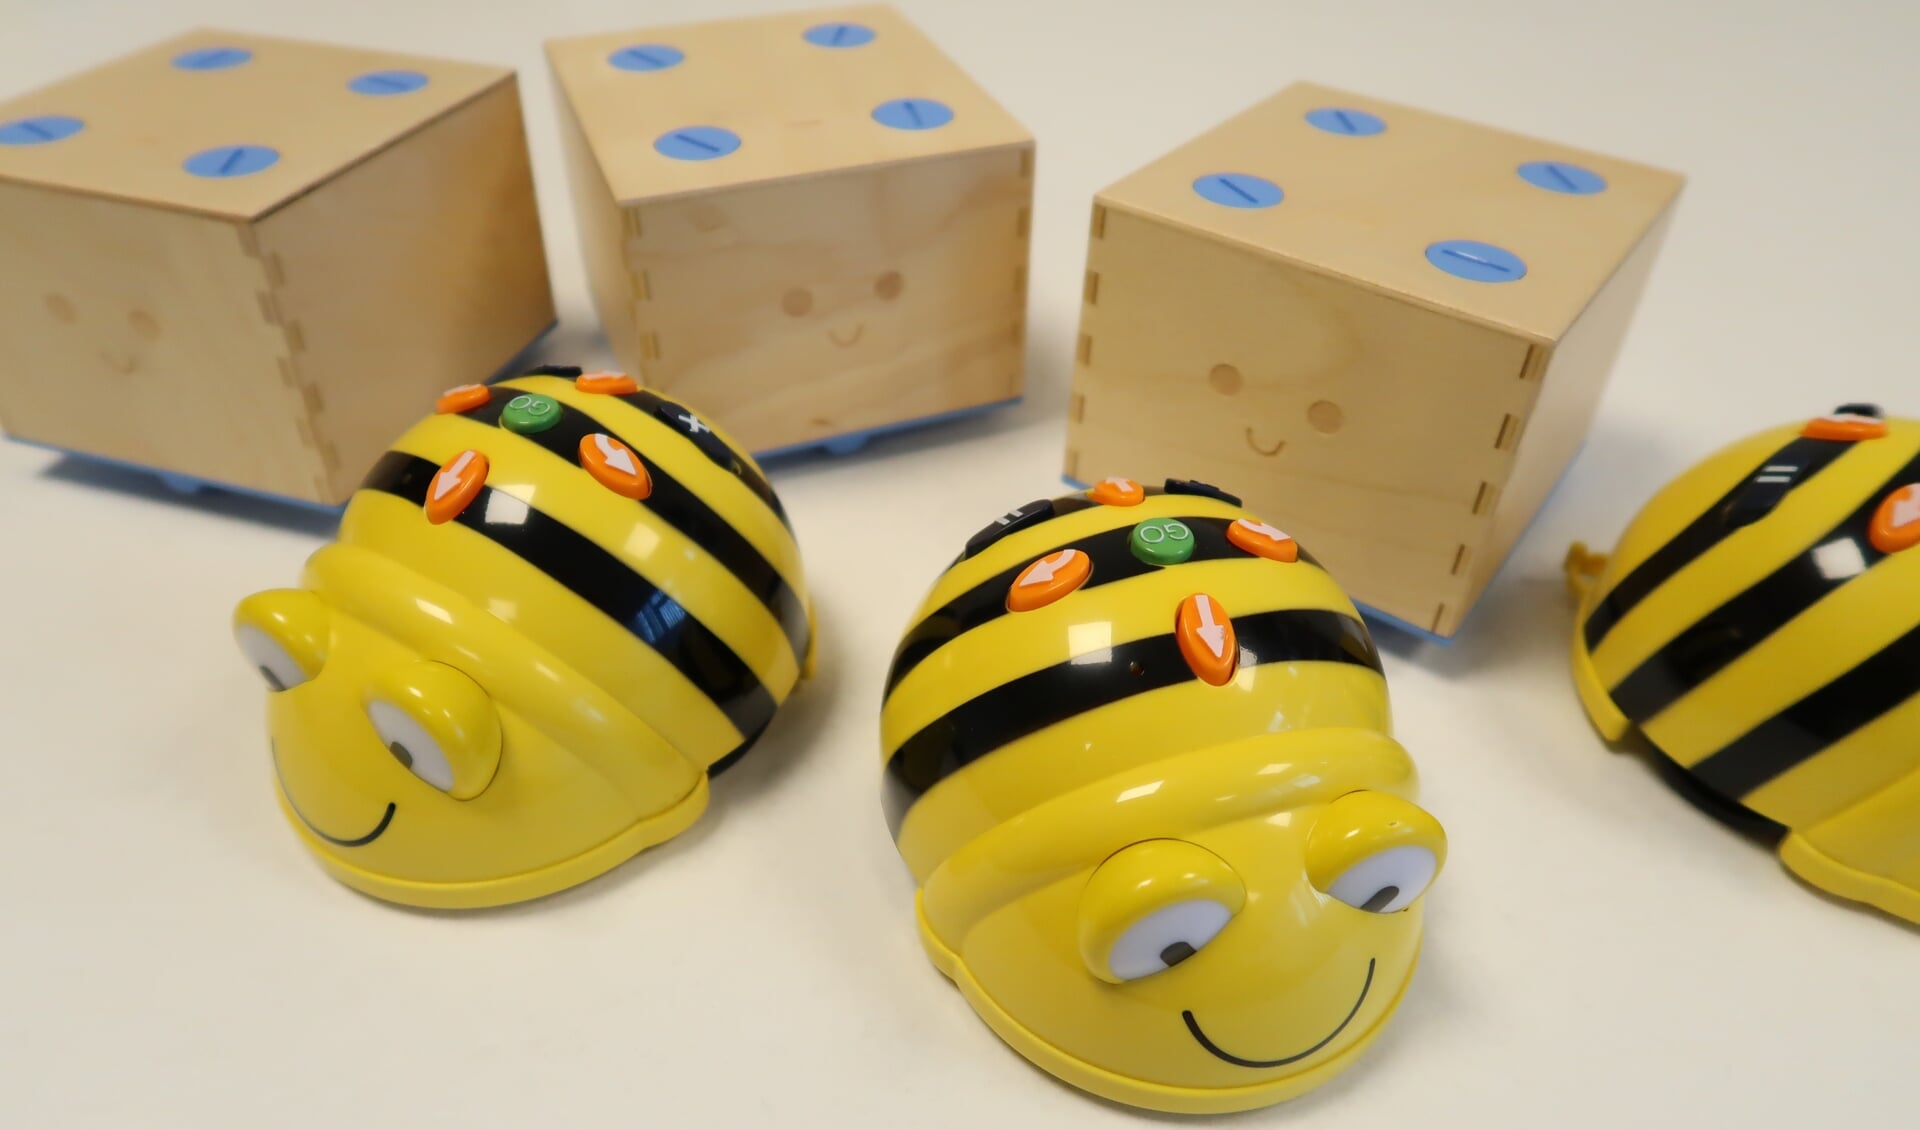 Leren progammeren met BeeBot en Cubetto. Foto: PR